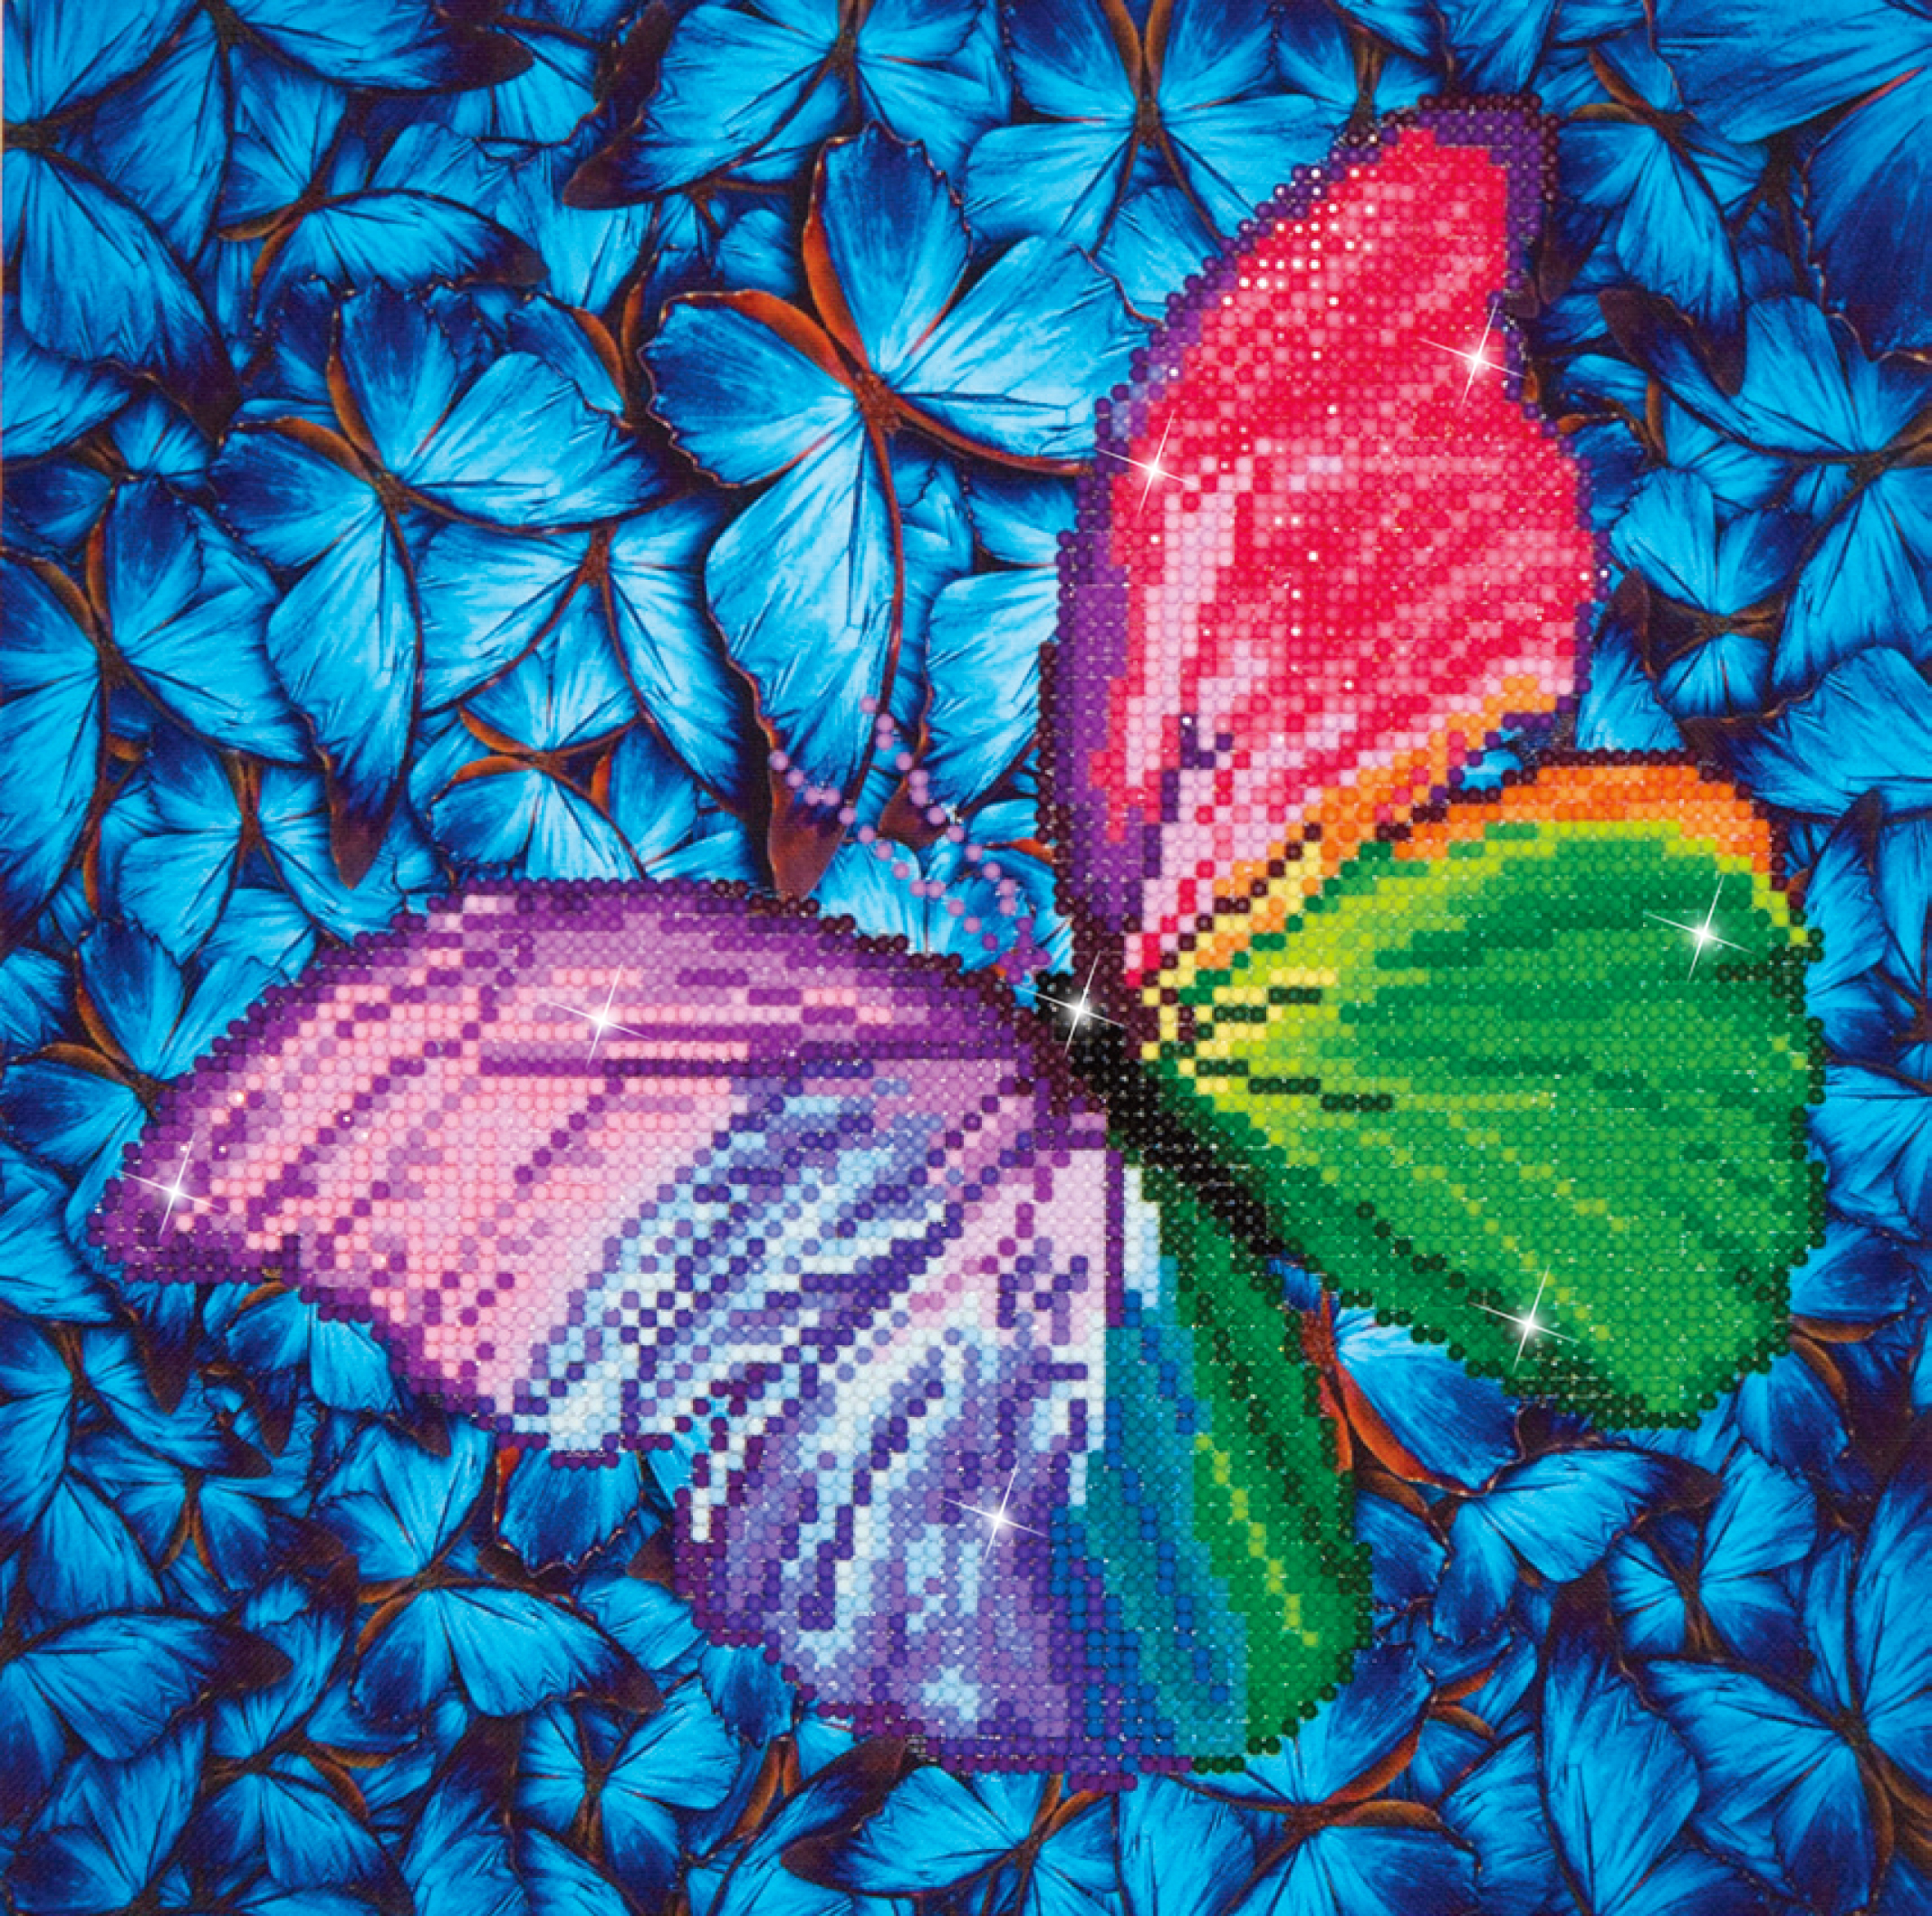 Diamond Dotz Motiv “Schmetterling”, funkelndes Diamantbild zum  Selbstgestalten ca. 27 cm x 35 cm groß, Malen mit Diamanten – Farbenspiel